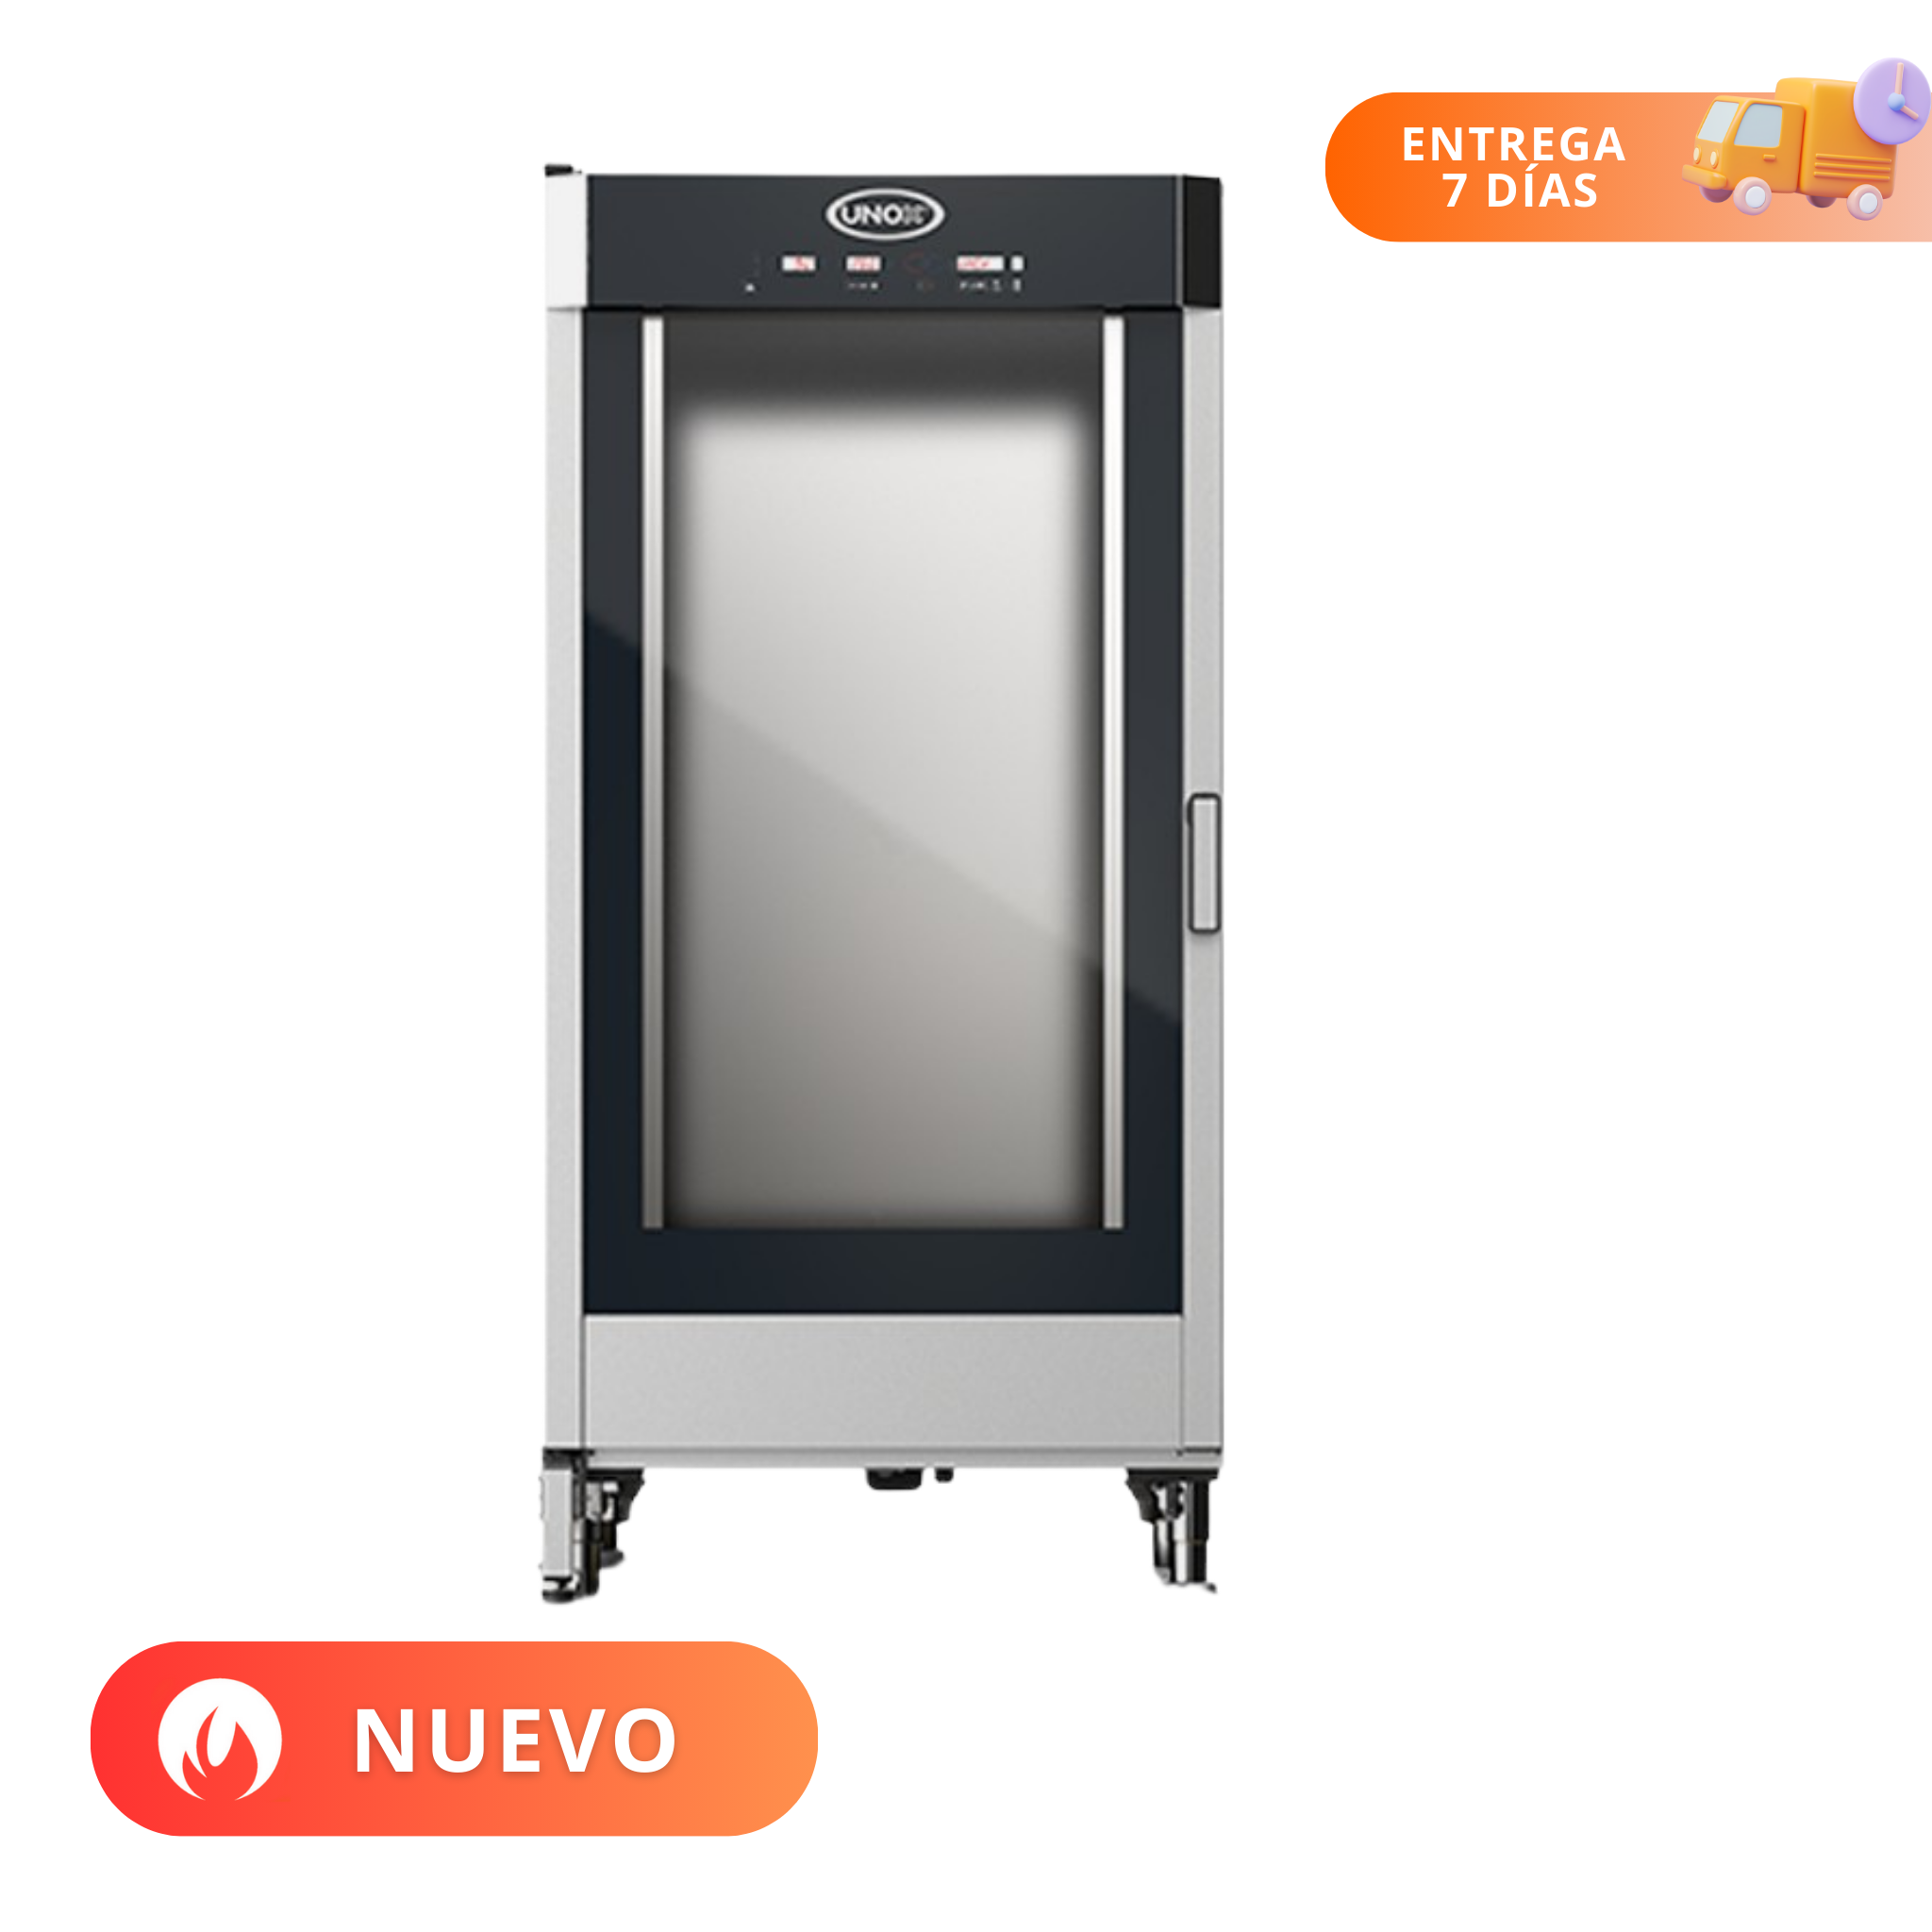 UNOX | Fermentadora Lievox | 16 Charolas 600x400 | XEBPL-16EU-D | Nuevo